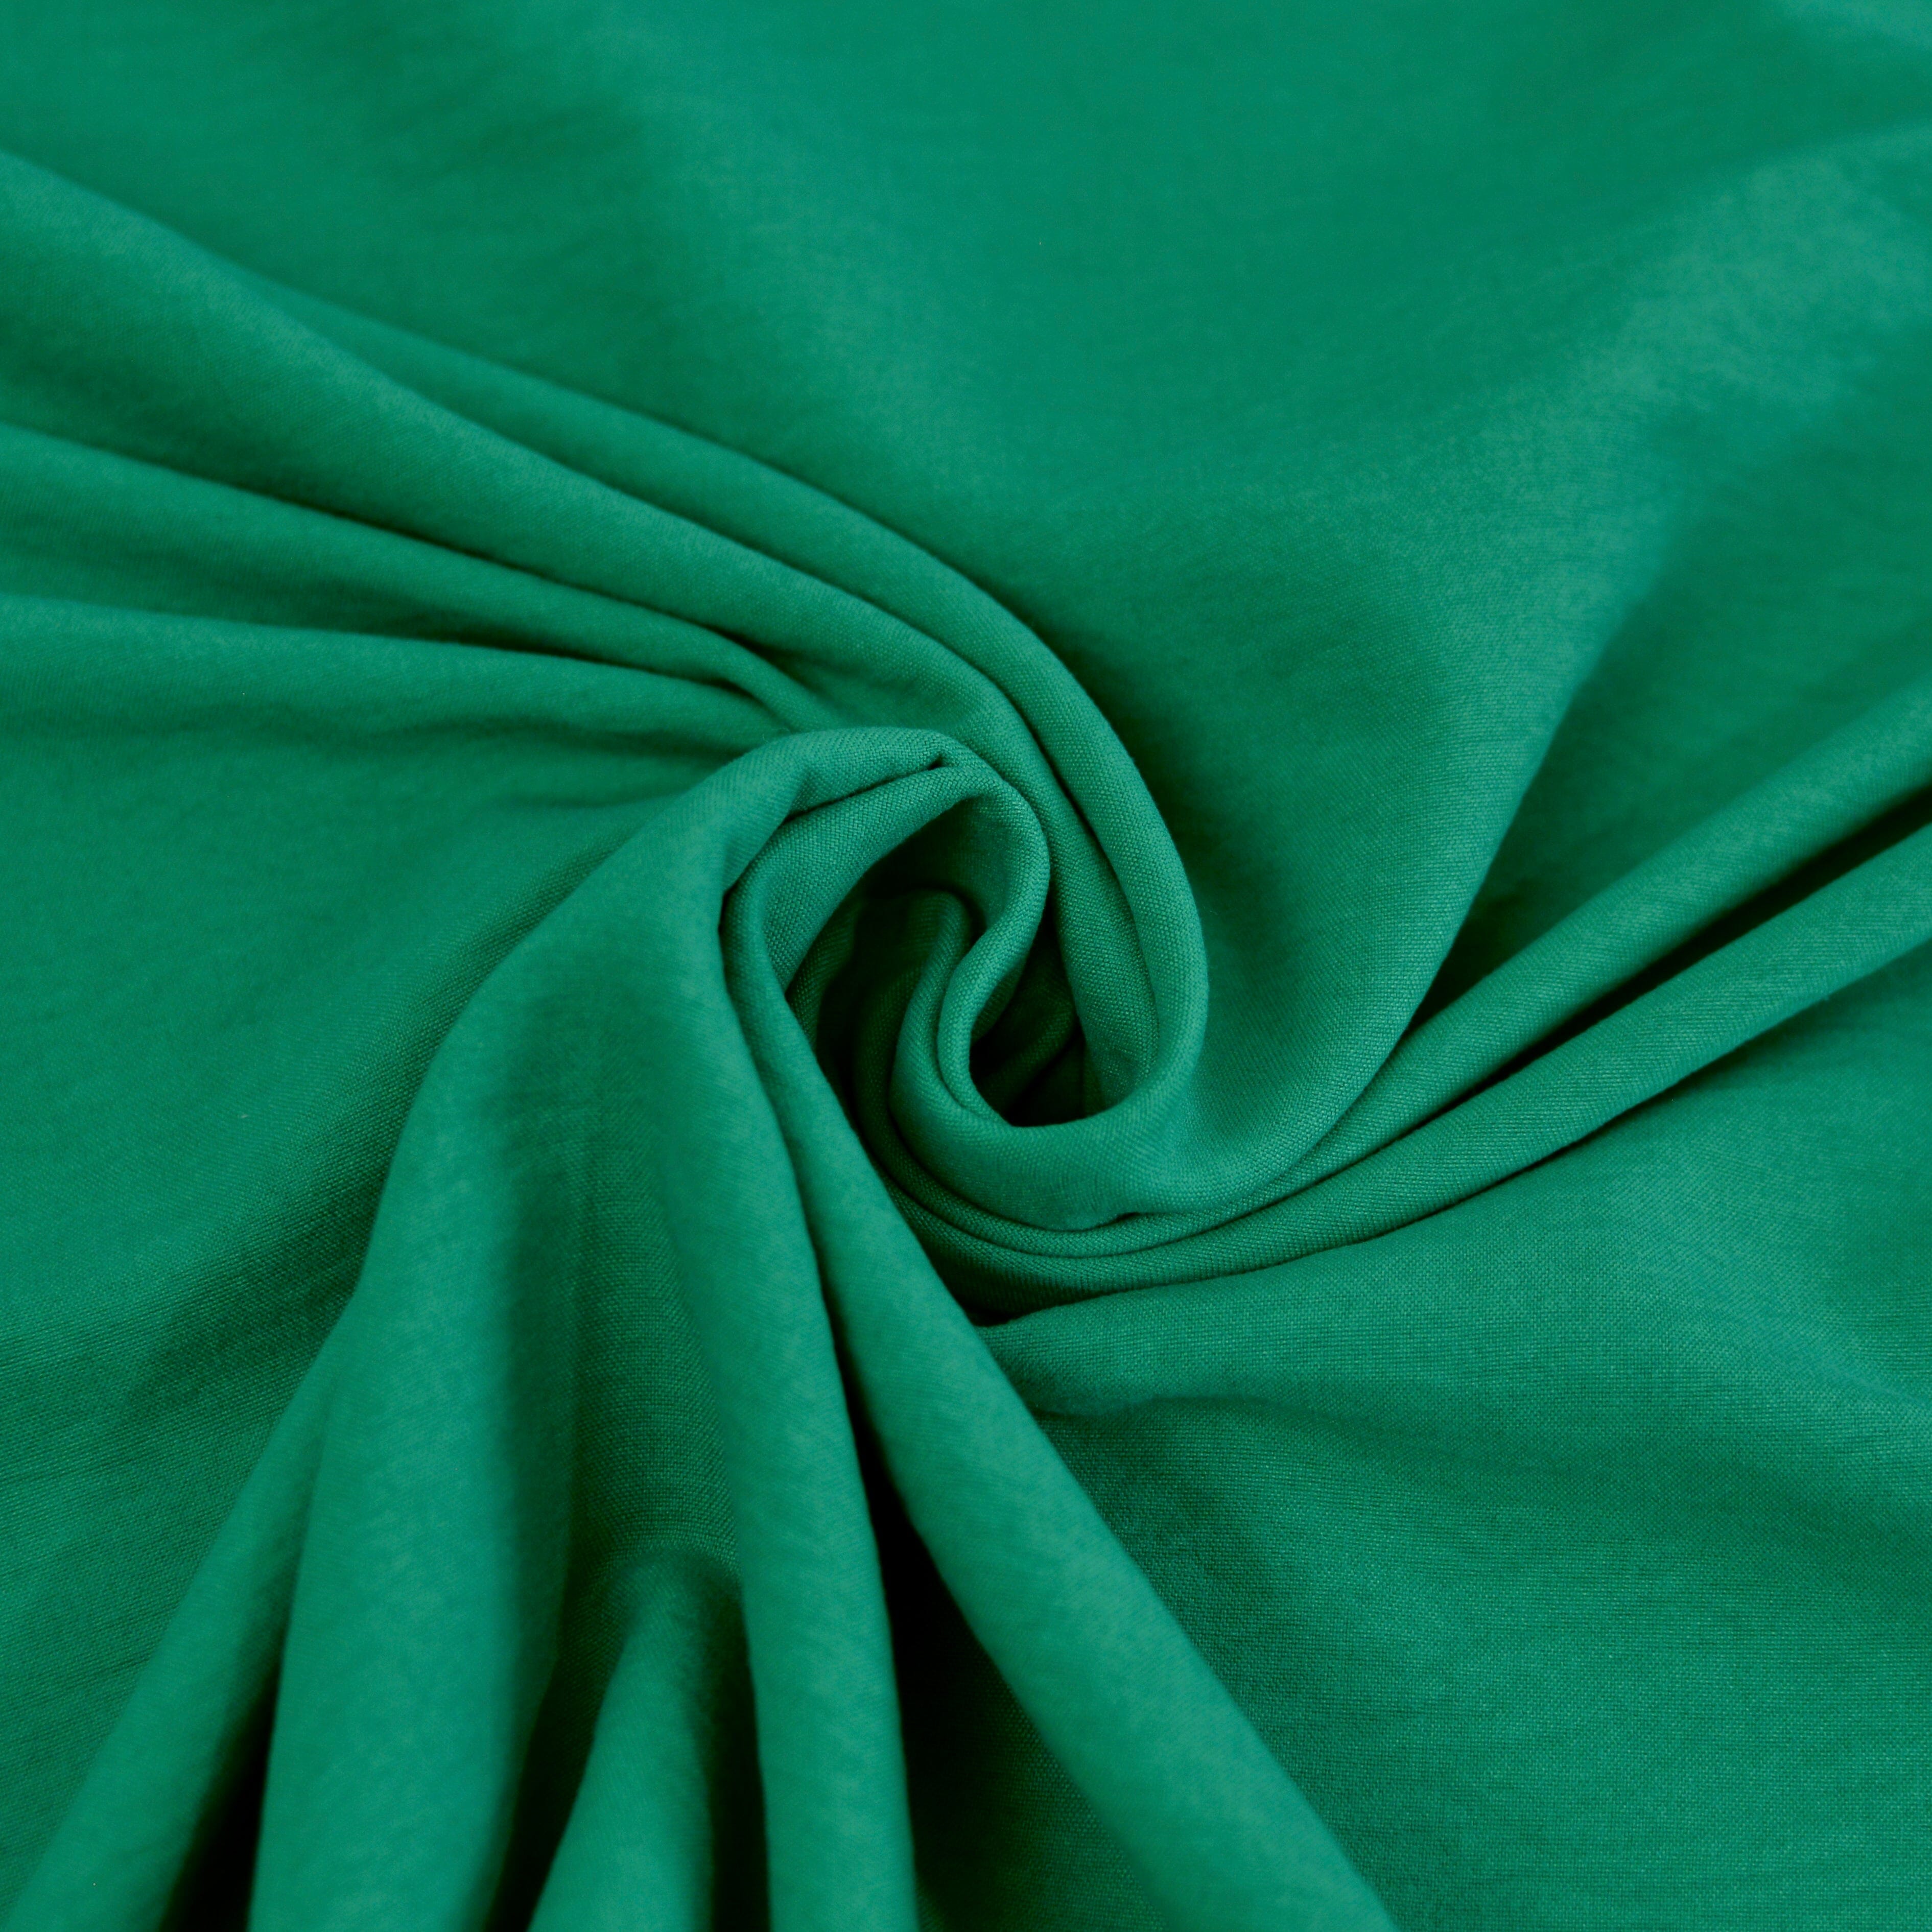 Classy knitterarme Webware Velvet Touch - smaragdgrün Fabric poshpinks